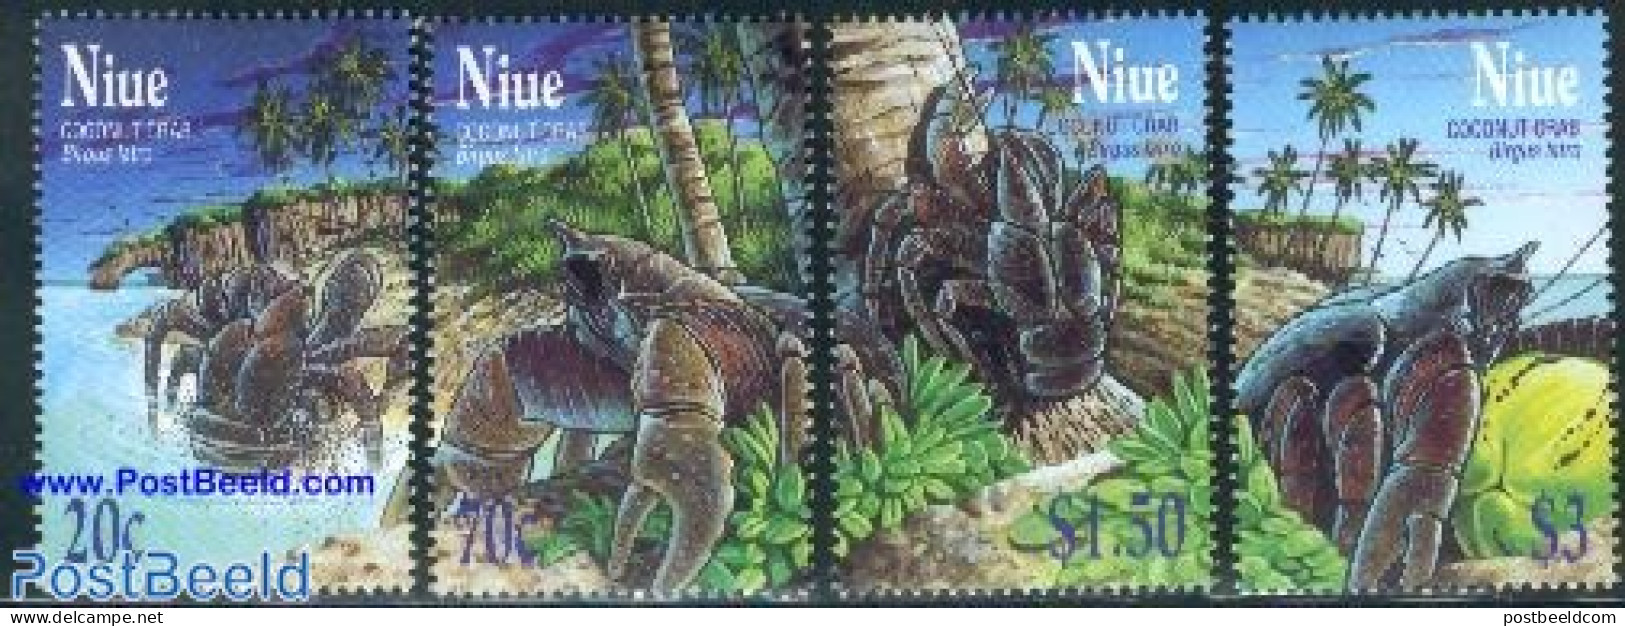 Niue 2001 Coconut Crab 4v, Mint NH, Nature - Shells & Crustaceans - Crabs And Lobsters - Meereswelt